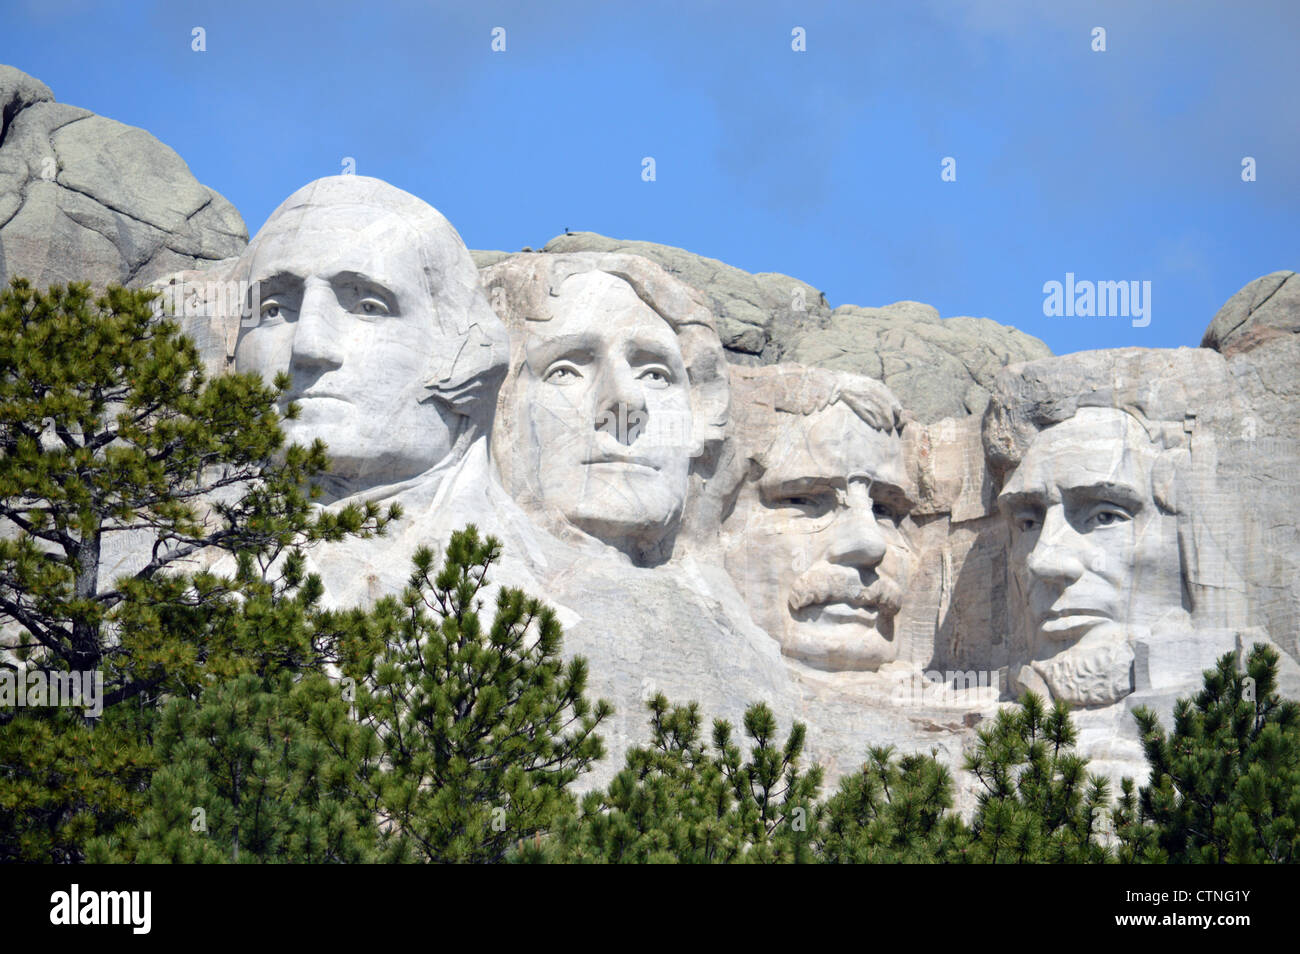 Mt Rushmore National Memorial in South Dakota Stock Photo